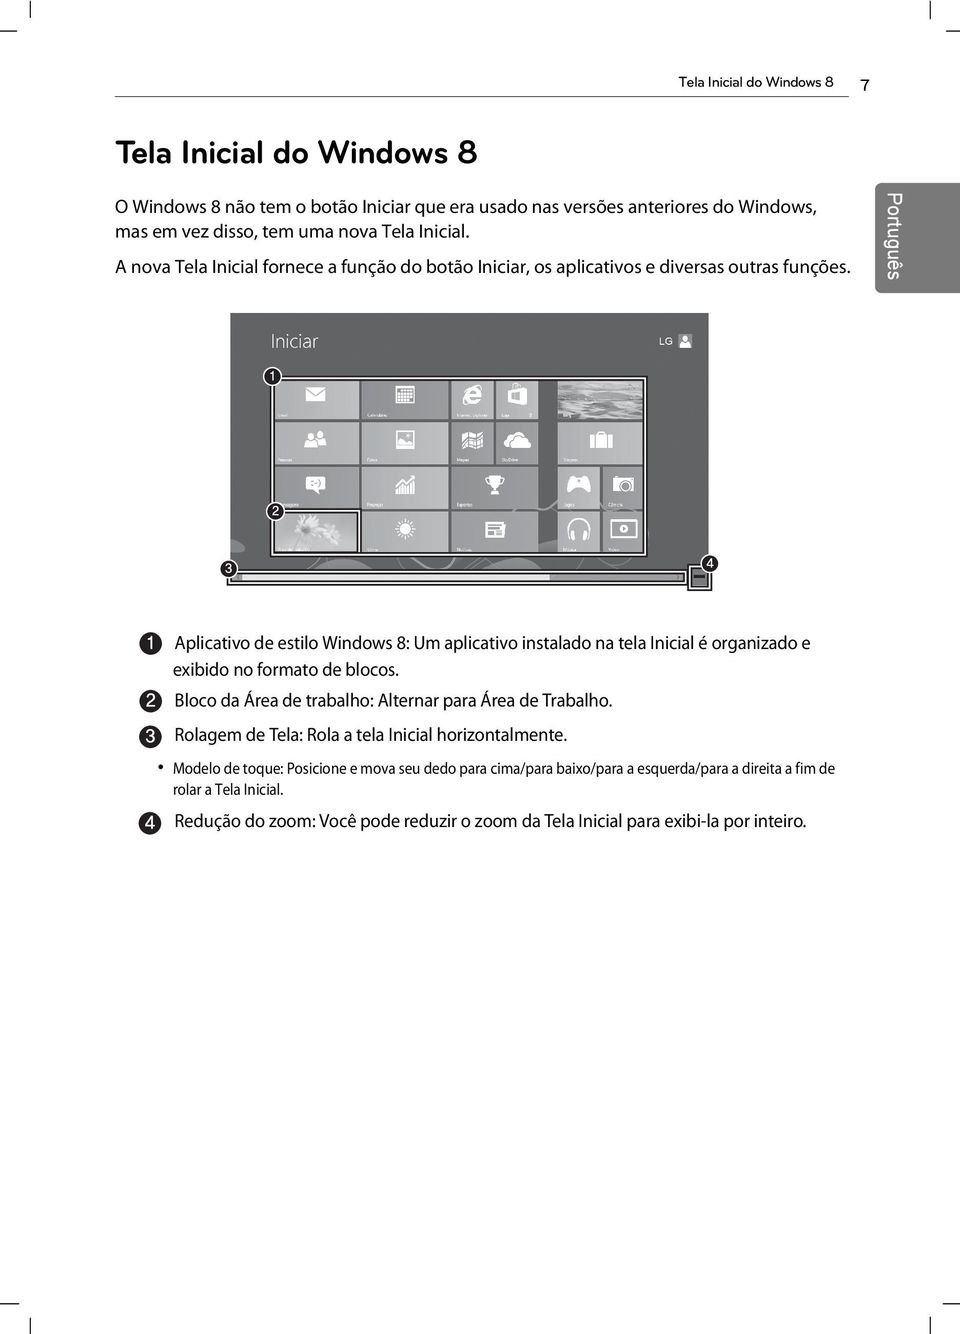 Aplicativo de estilo Windows 8: Um aplicativo instalado na tela Inicial é organizado e exibido no formato de blocos. Bloco da Área de trabalho: Alternar para Área de Trabalho.